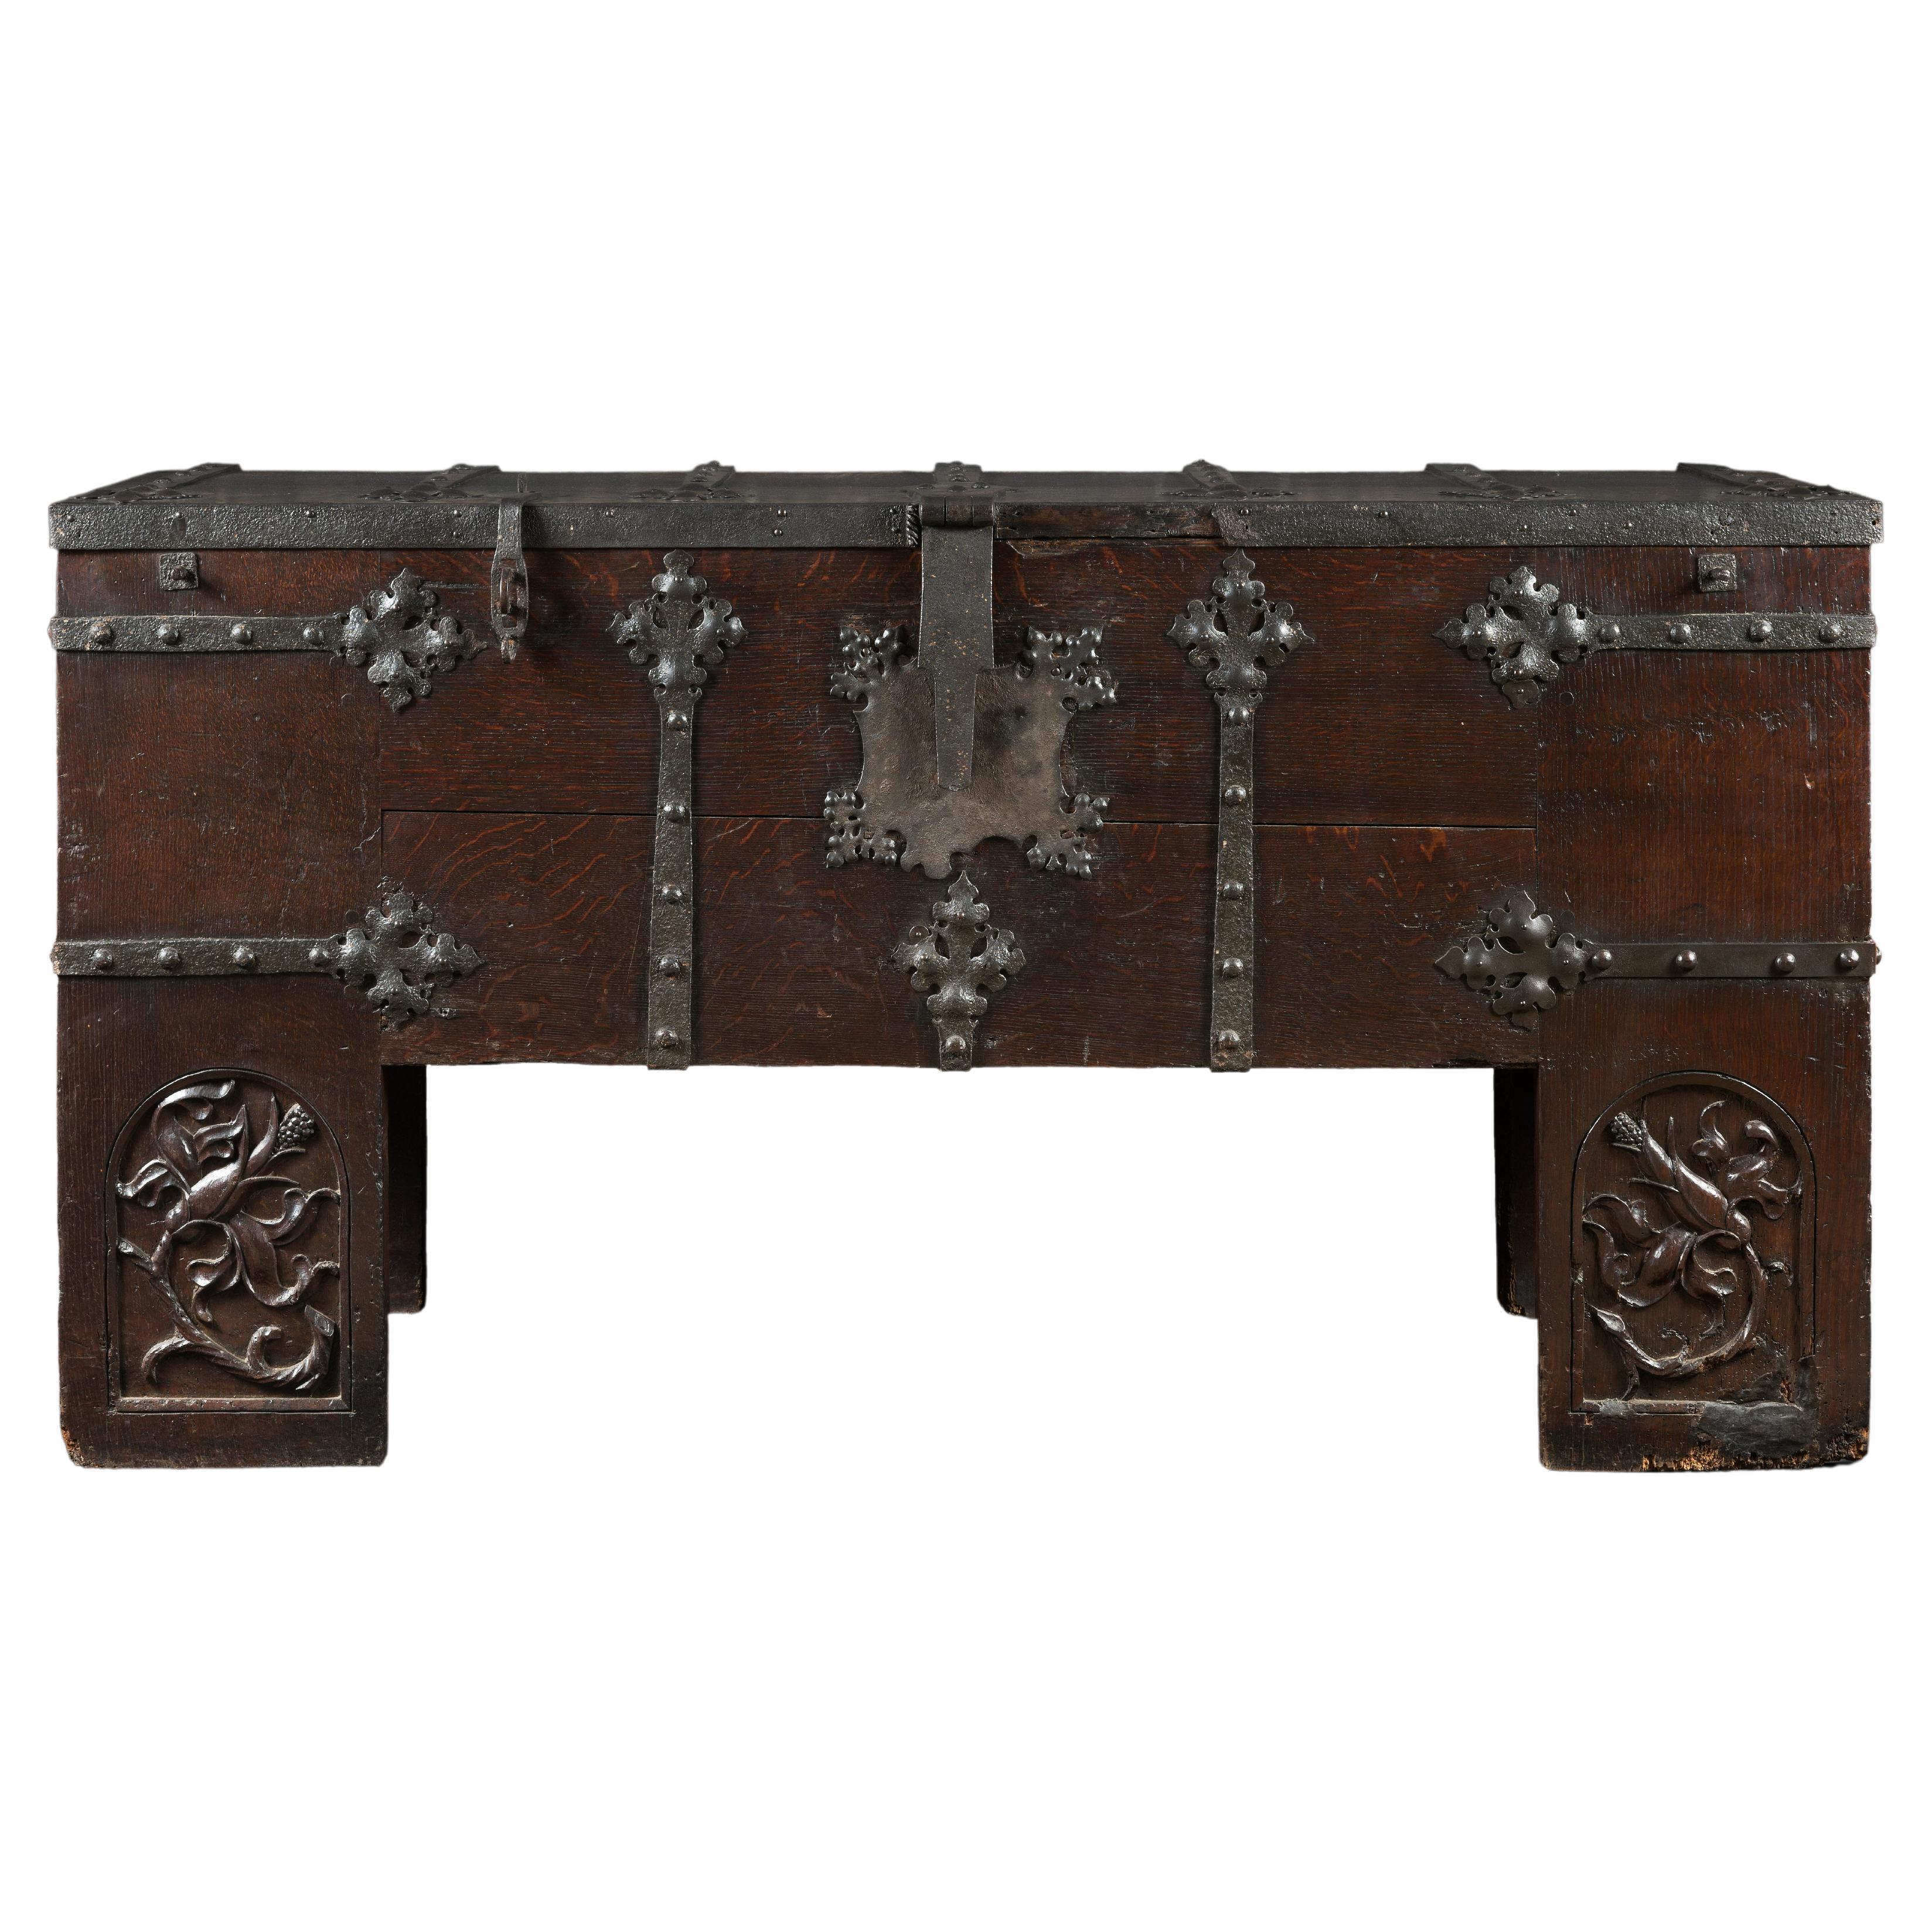 Rare coffre gothique allemand en chêne et fer connu sous le nom de « Stolentruhe »